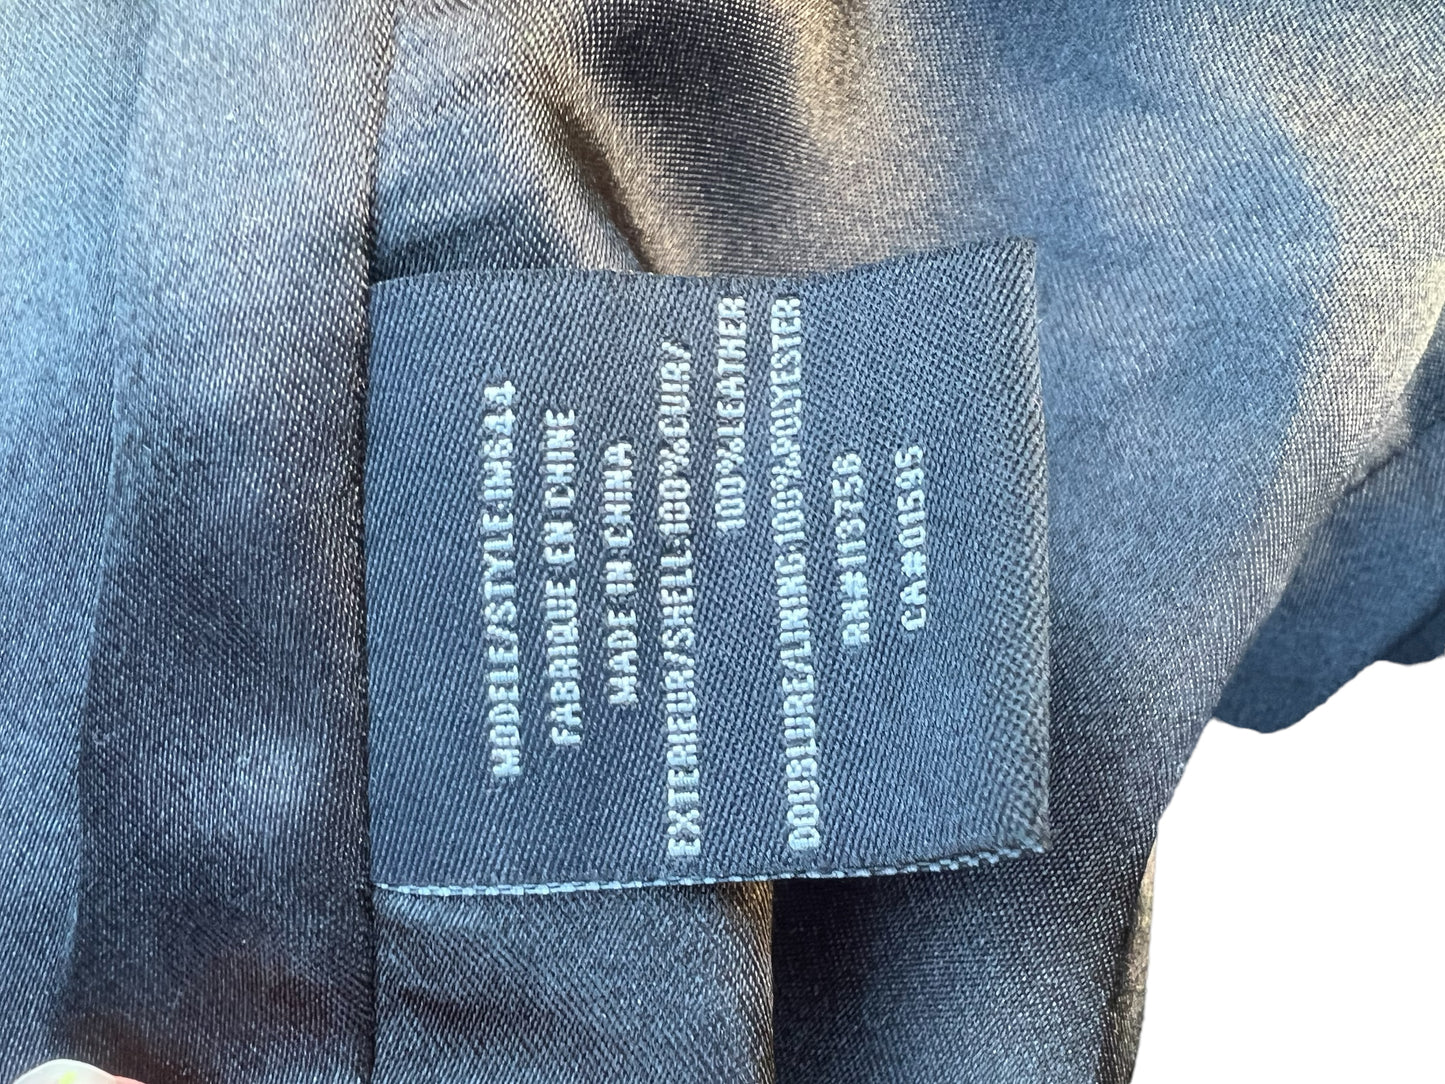 Issac Mizrahi Genuine Leather Black Jacket